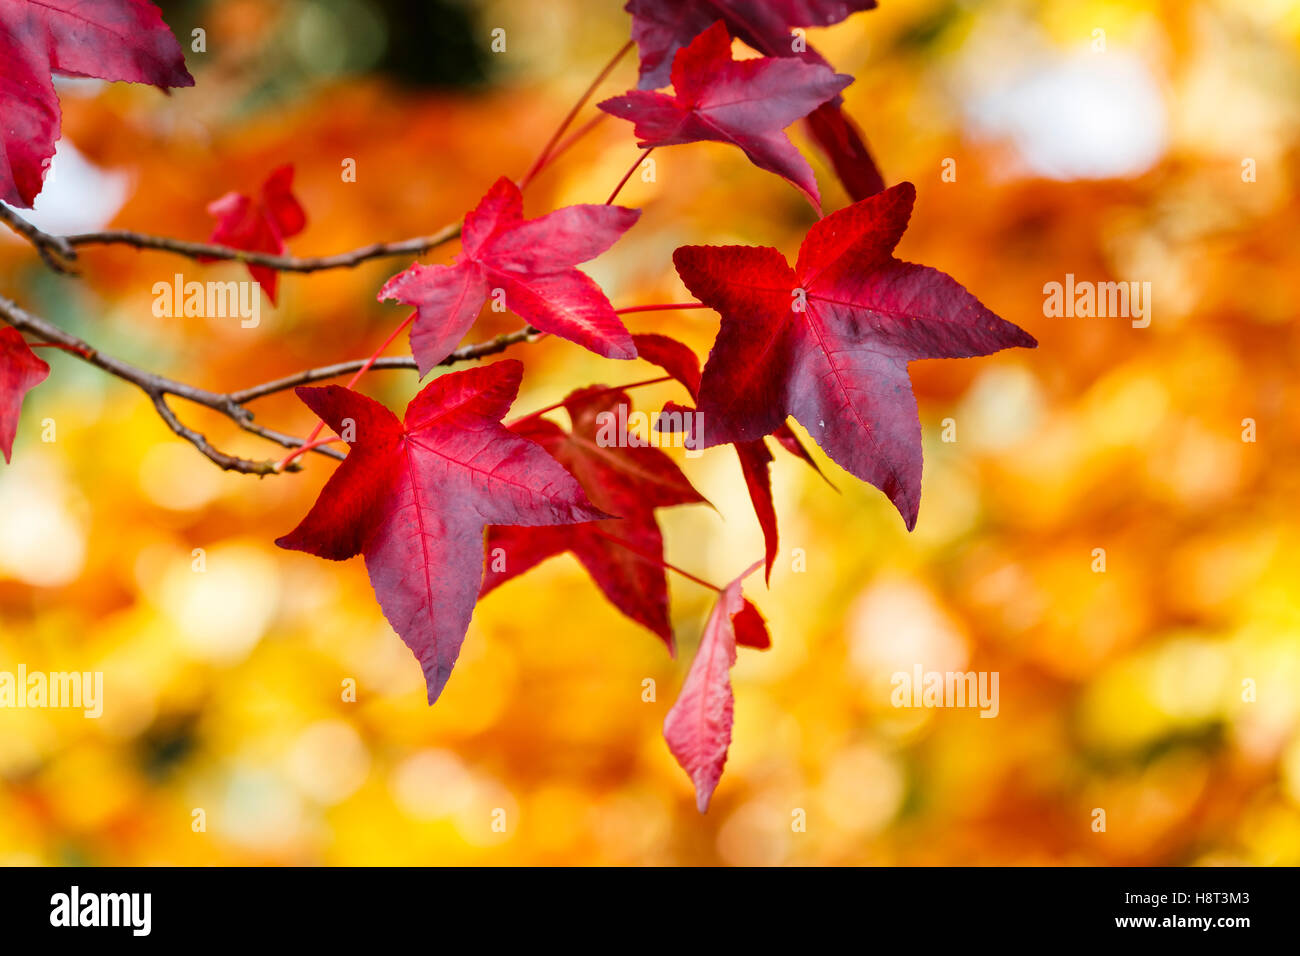 Liquidambar styraciflua colorés feuilles sur une branche dans une profonde rouge écarlate couleurs d'automne sur fond jaune close-up dans le sud-est de l'Angleterre, Royaume-Uni Banque D'Images